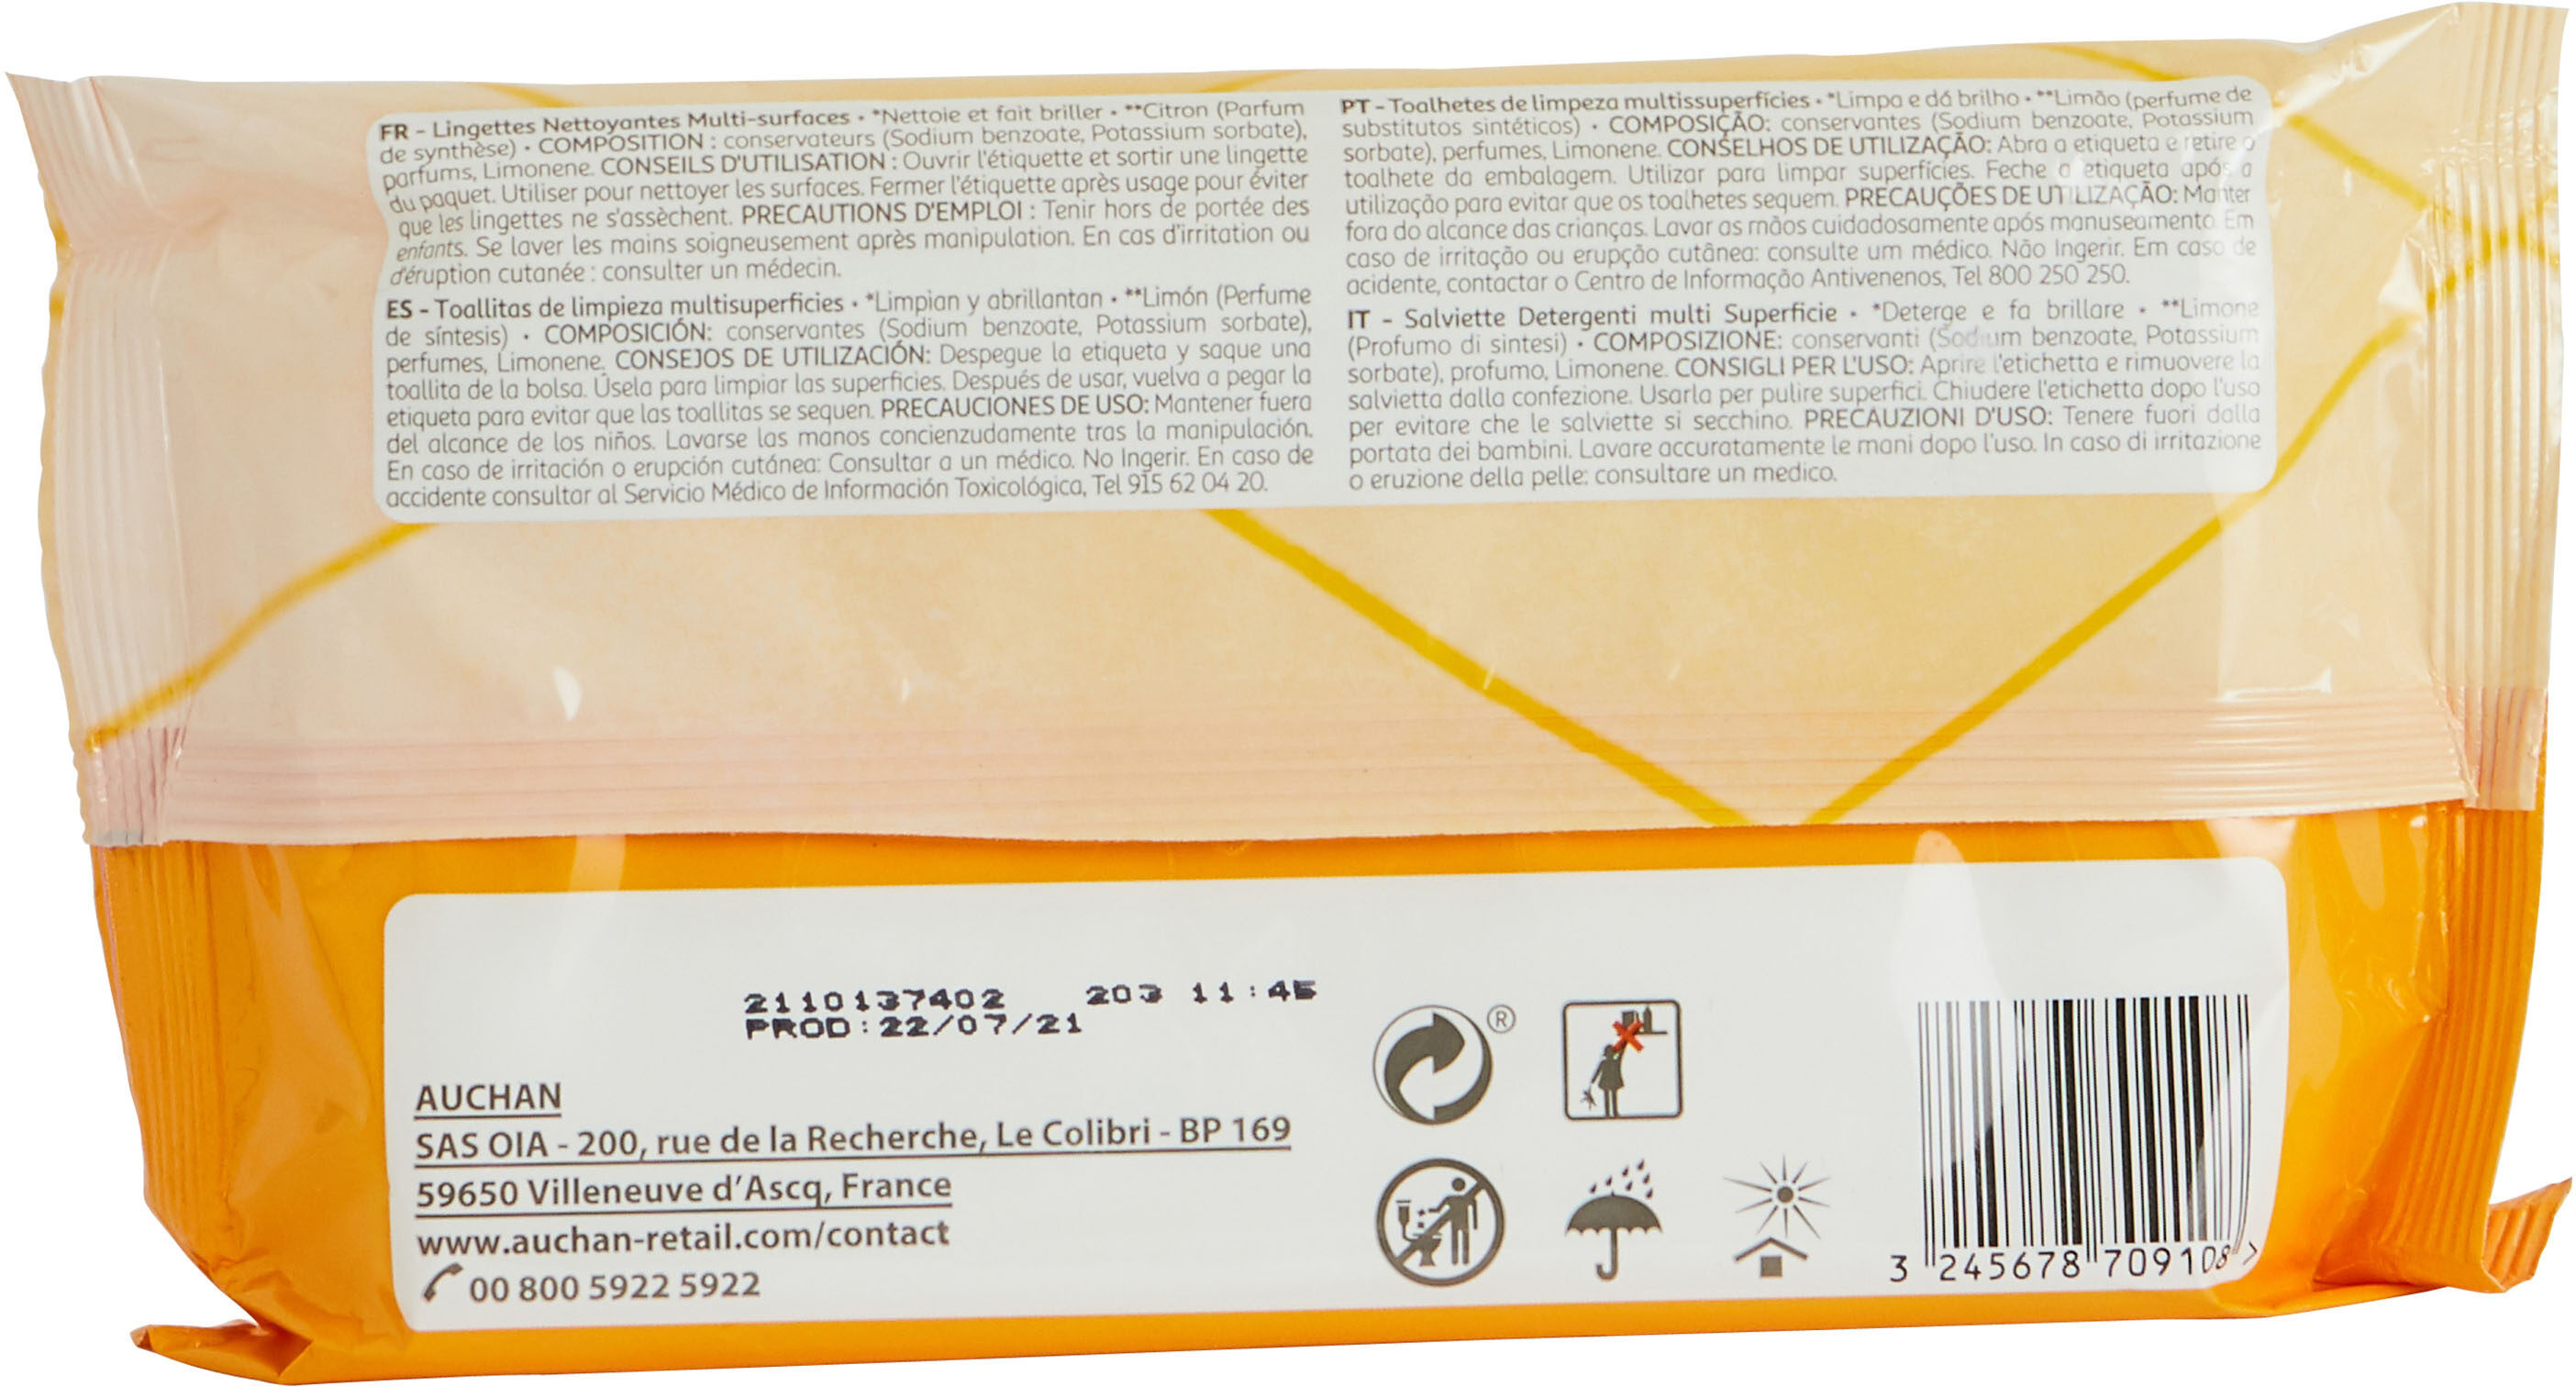 Auchan lingettes nettoyantes multi-surfaces citron x40 - Product - en